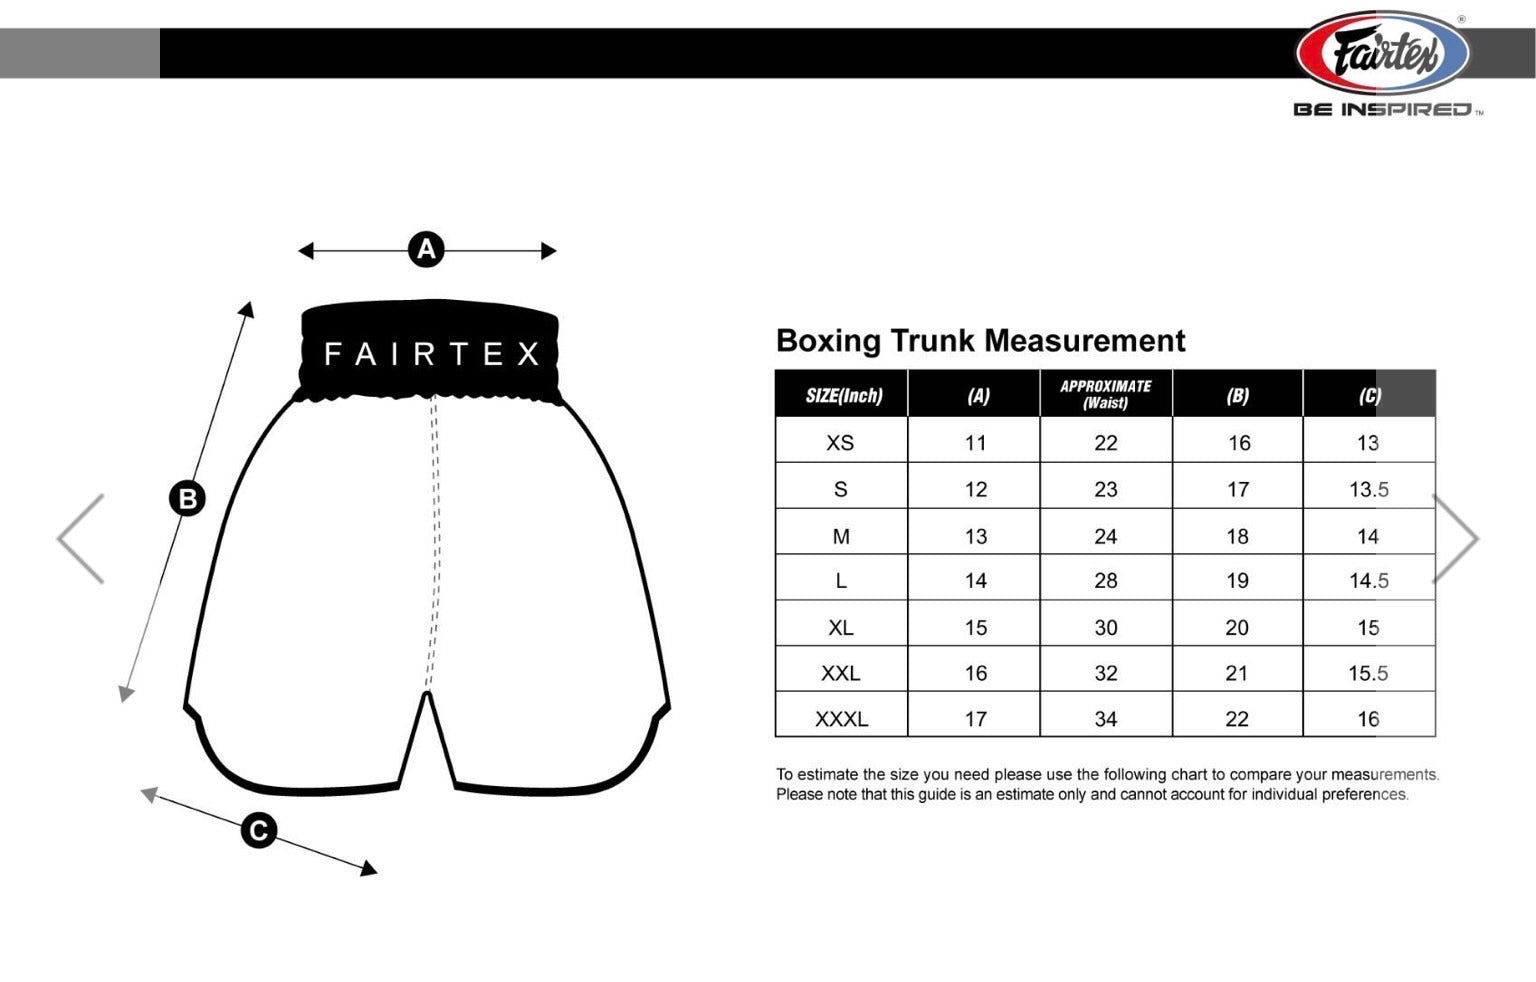 Fairtex Boxing Shorts - BT2009 Blue Fairtex